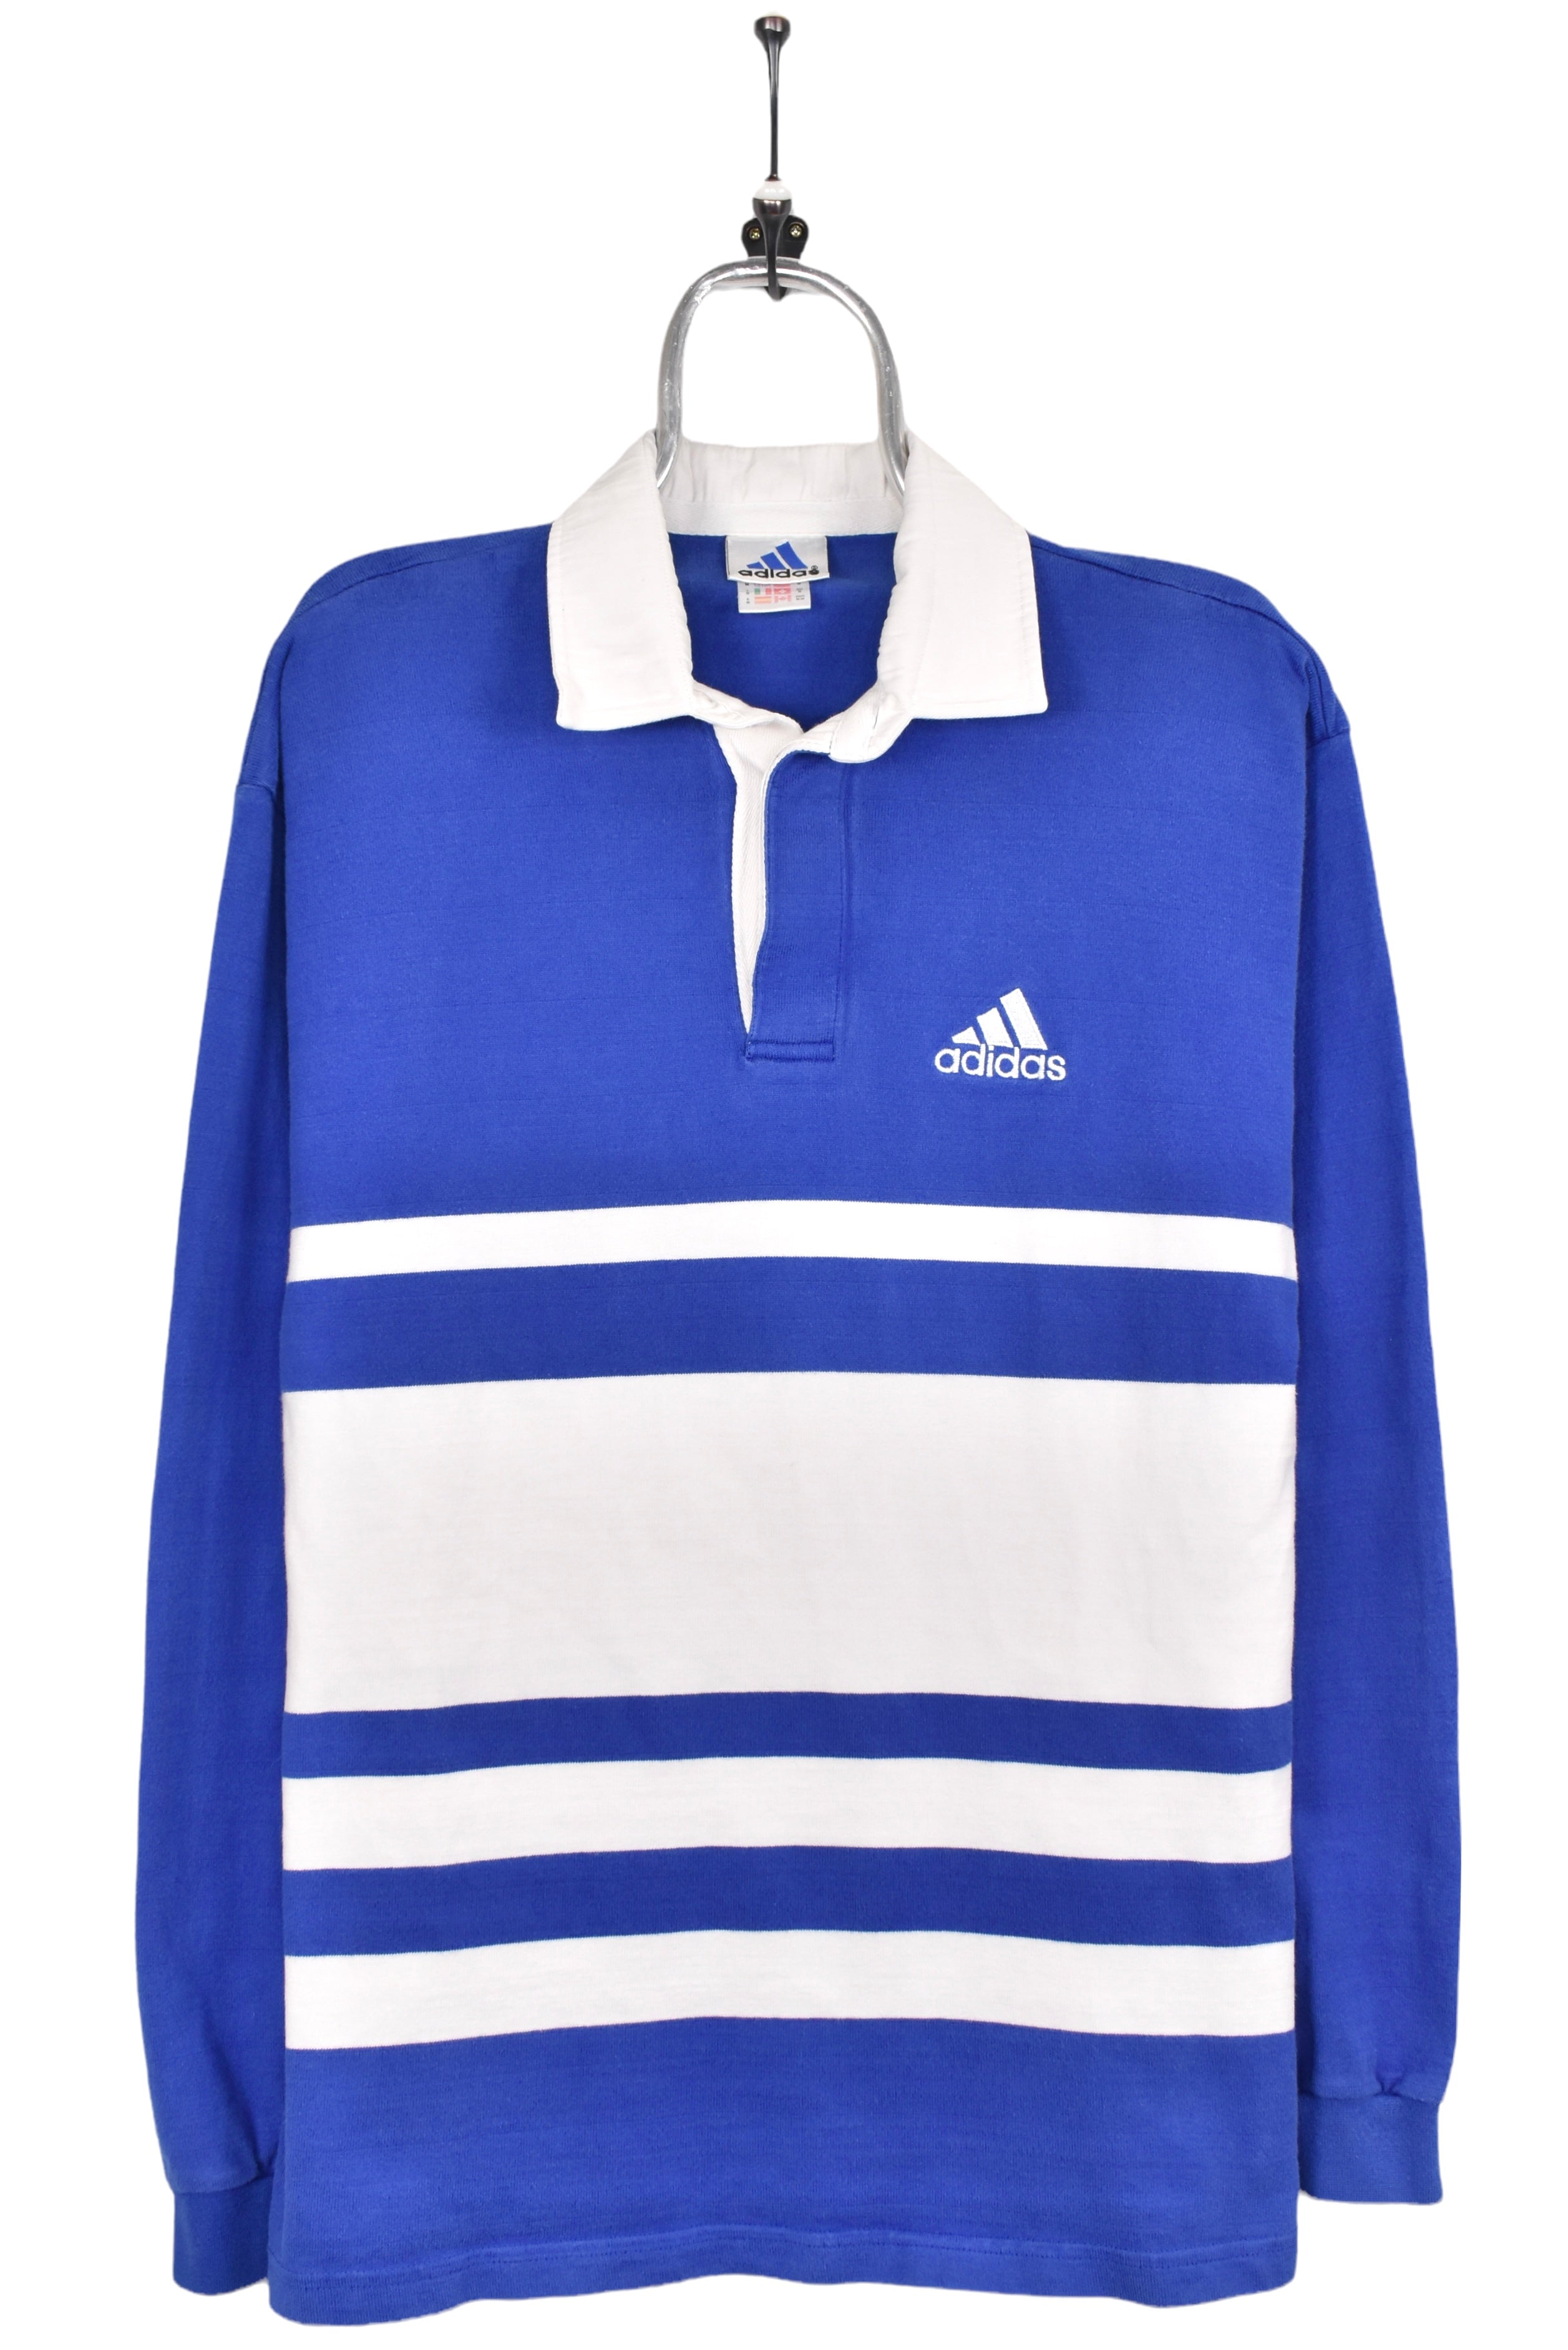 Vintage Adidas sweatshirt, blue embroidered rugby jumper - AU Medium ADIDAS